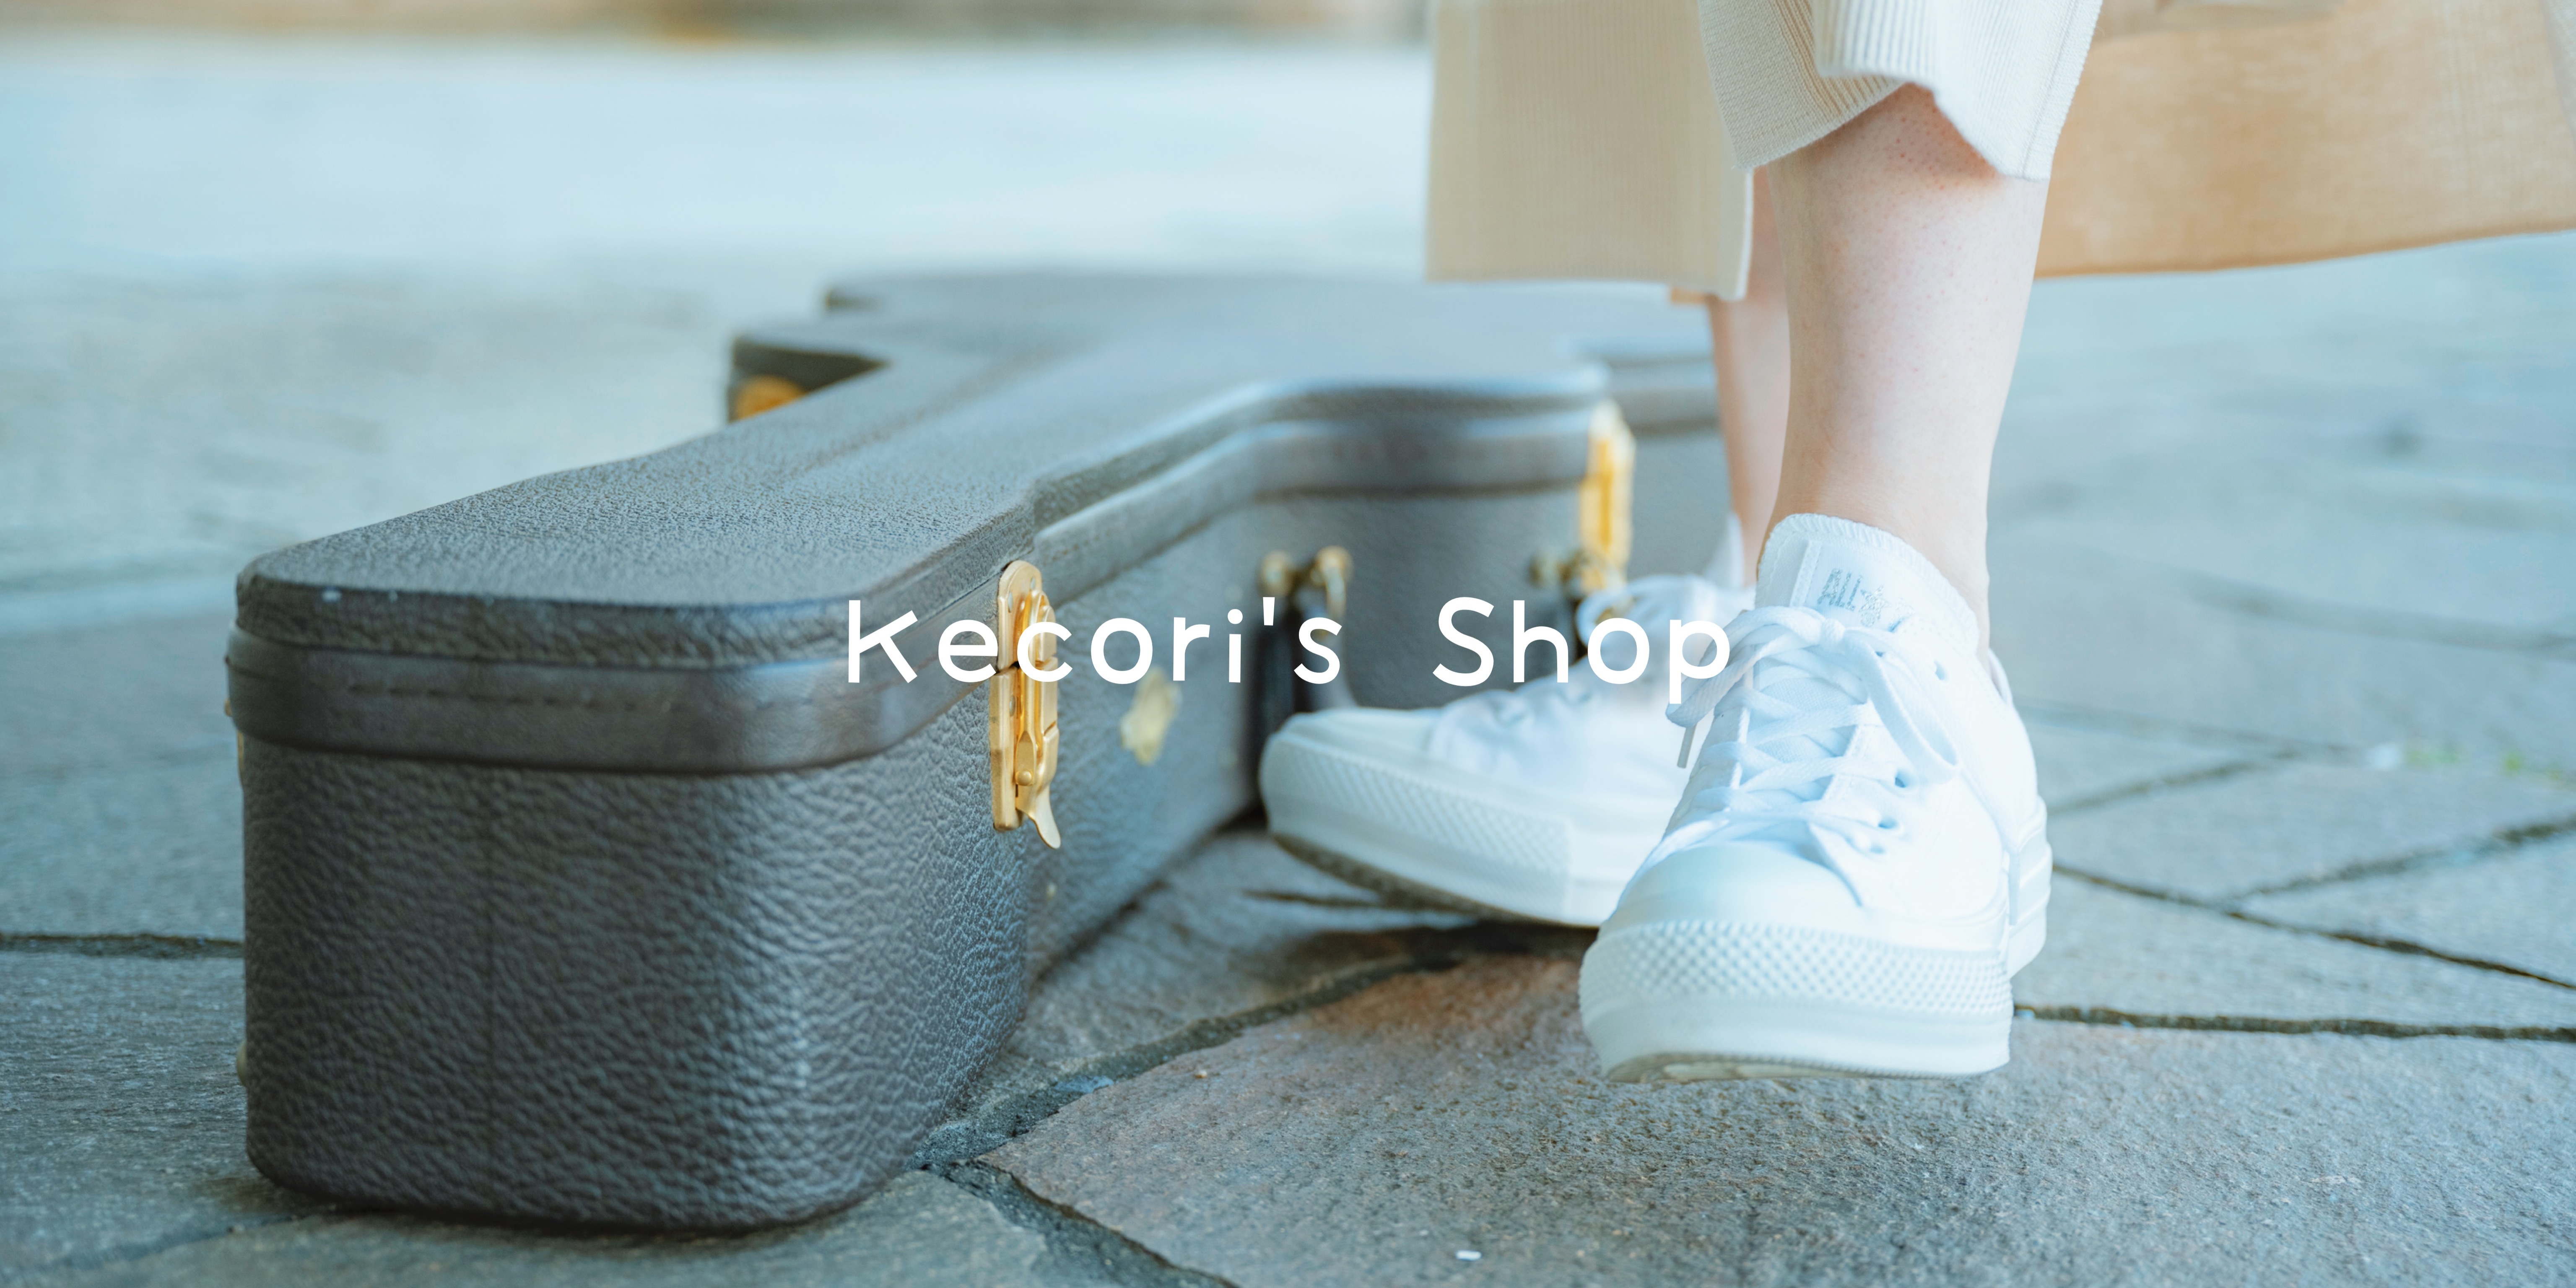 Kecori's shop 